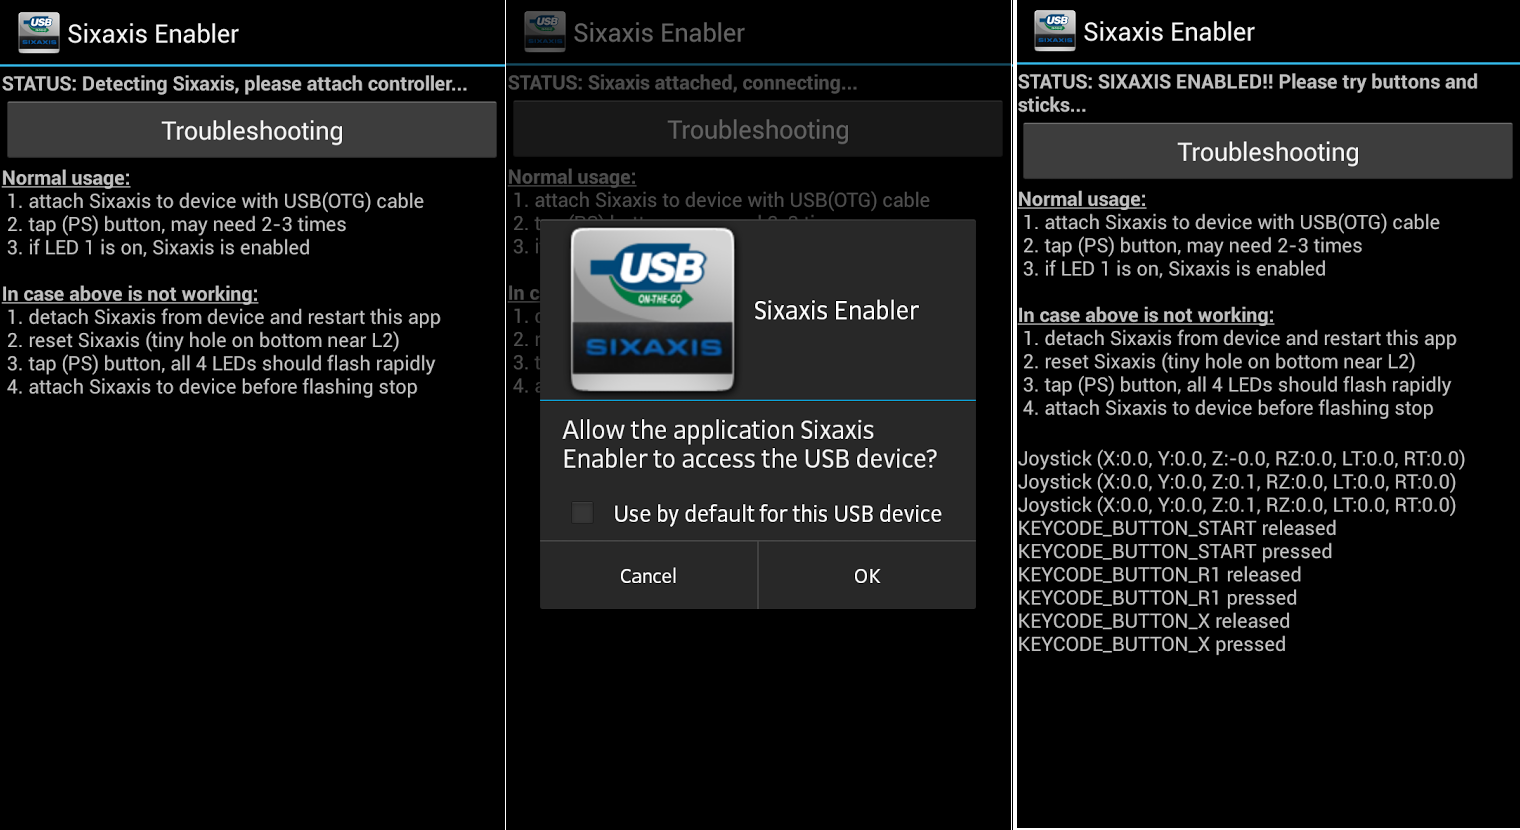 Come giocare con il joystick su Android. - App per utilizzare il joystick di Play Station 3e4 - Sixaxis Enabler 1